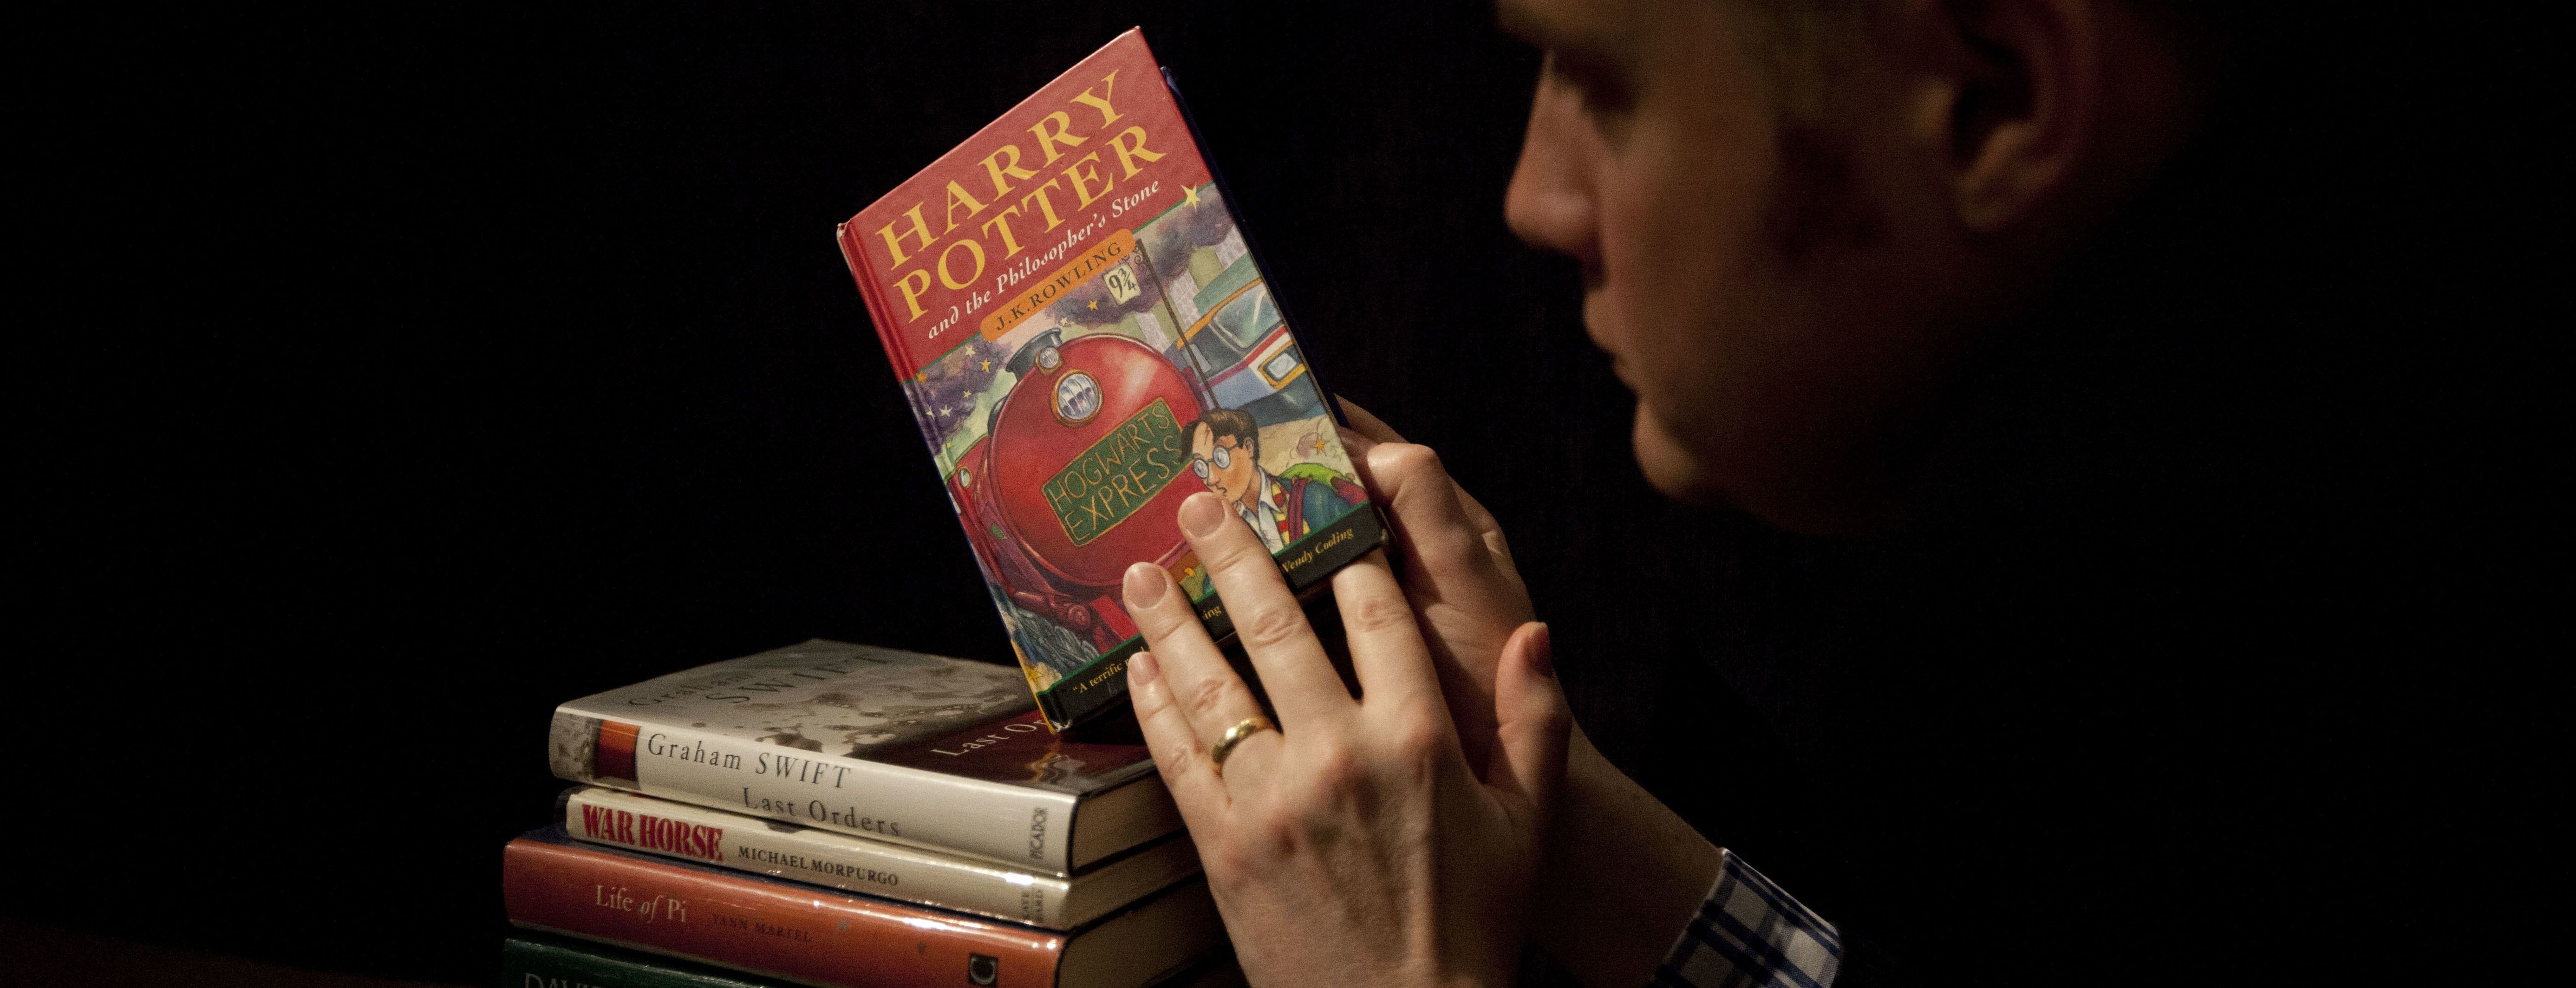 Прокляття є справжніми: у США пастор католицької школи вилучив з бібліотеки книги про Гаррі Поттера